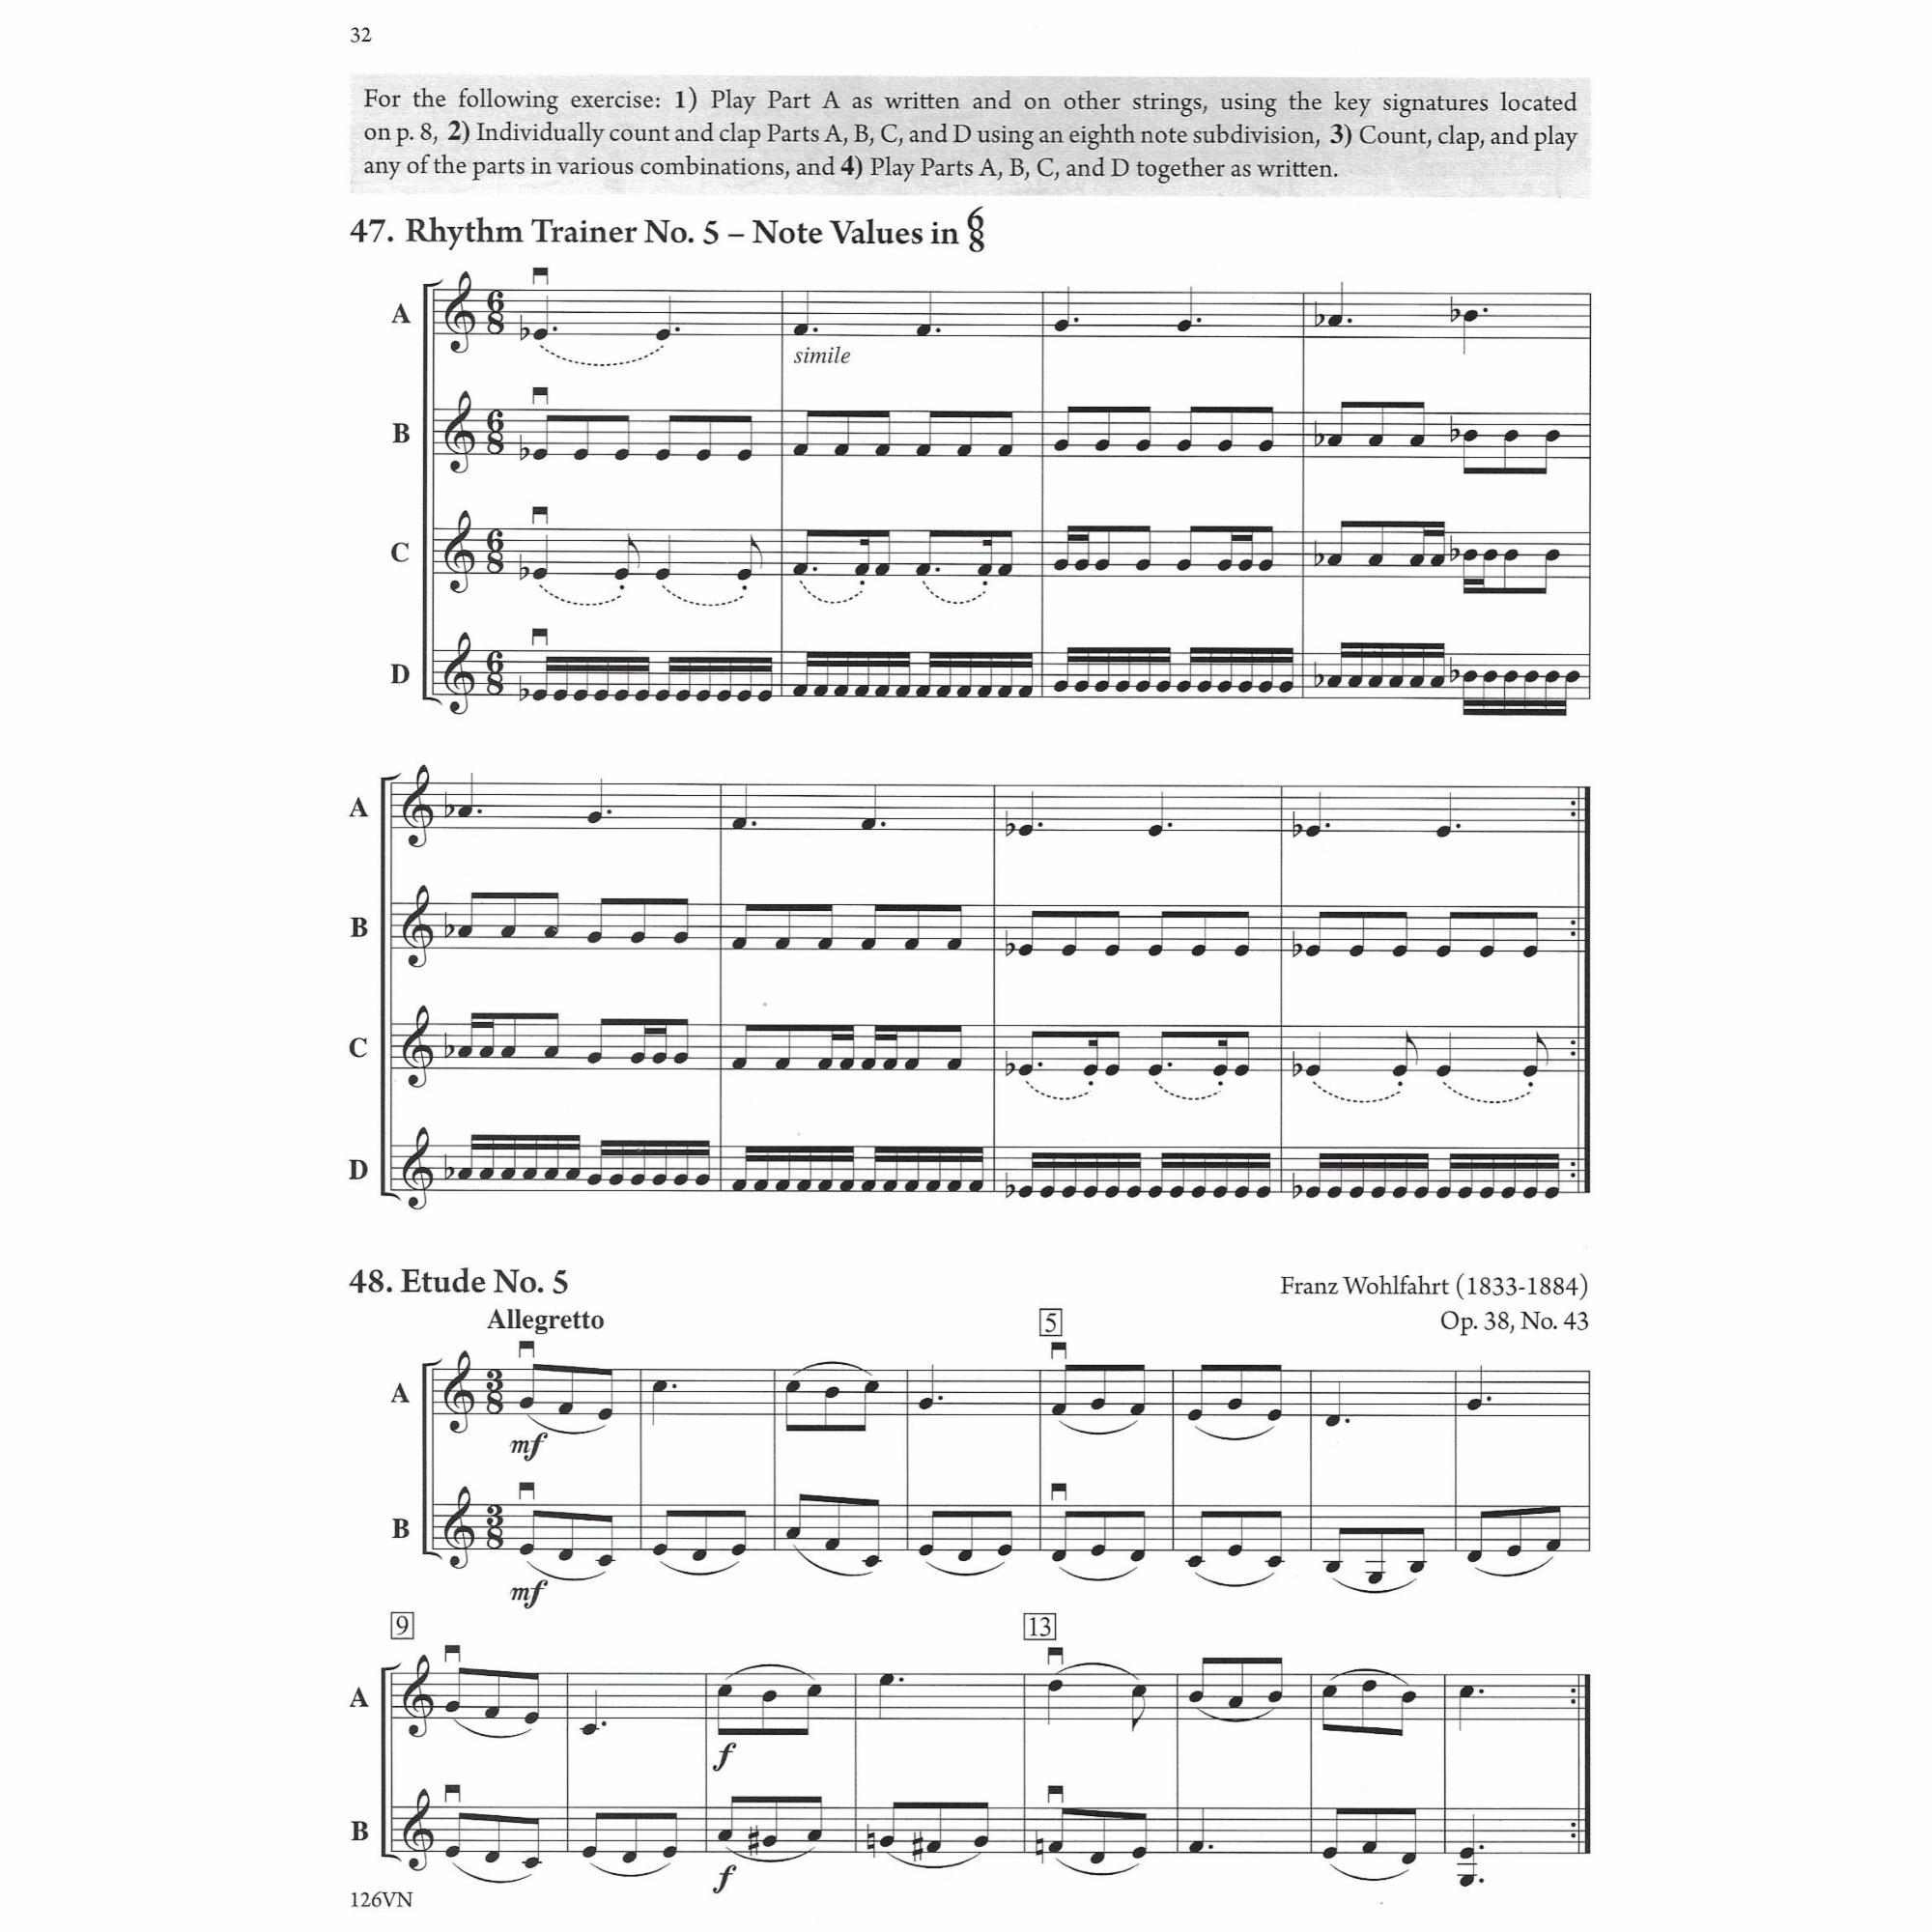 Sample: Violin (Pg. 32)